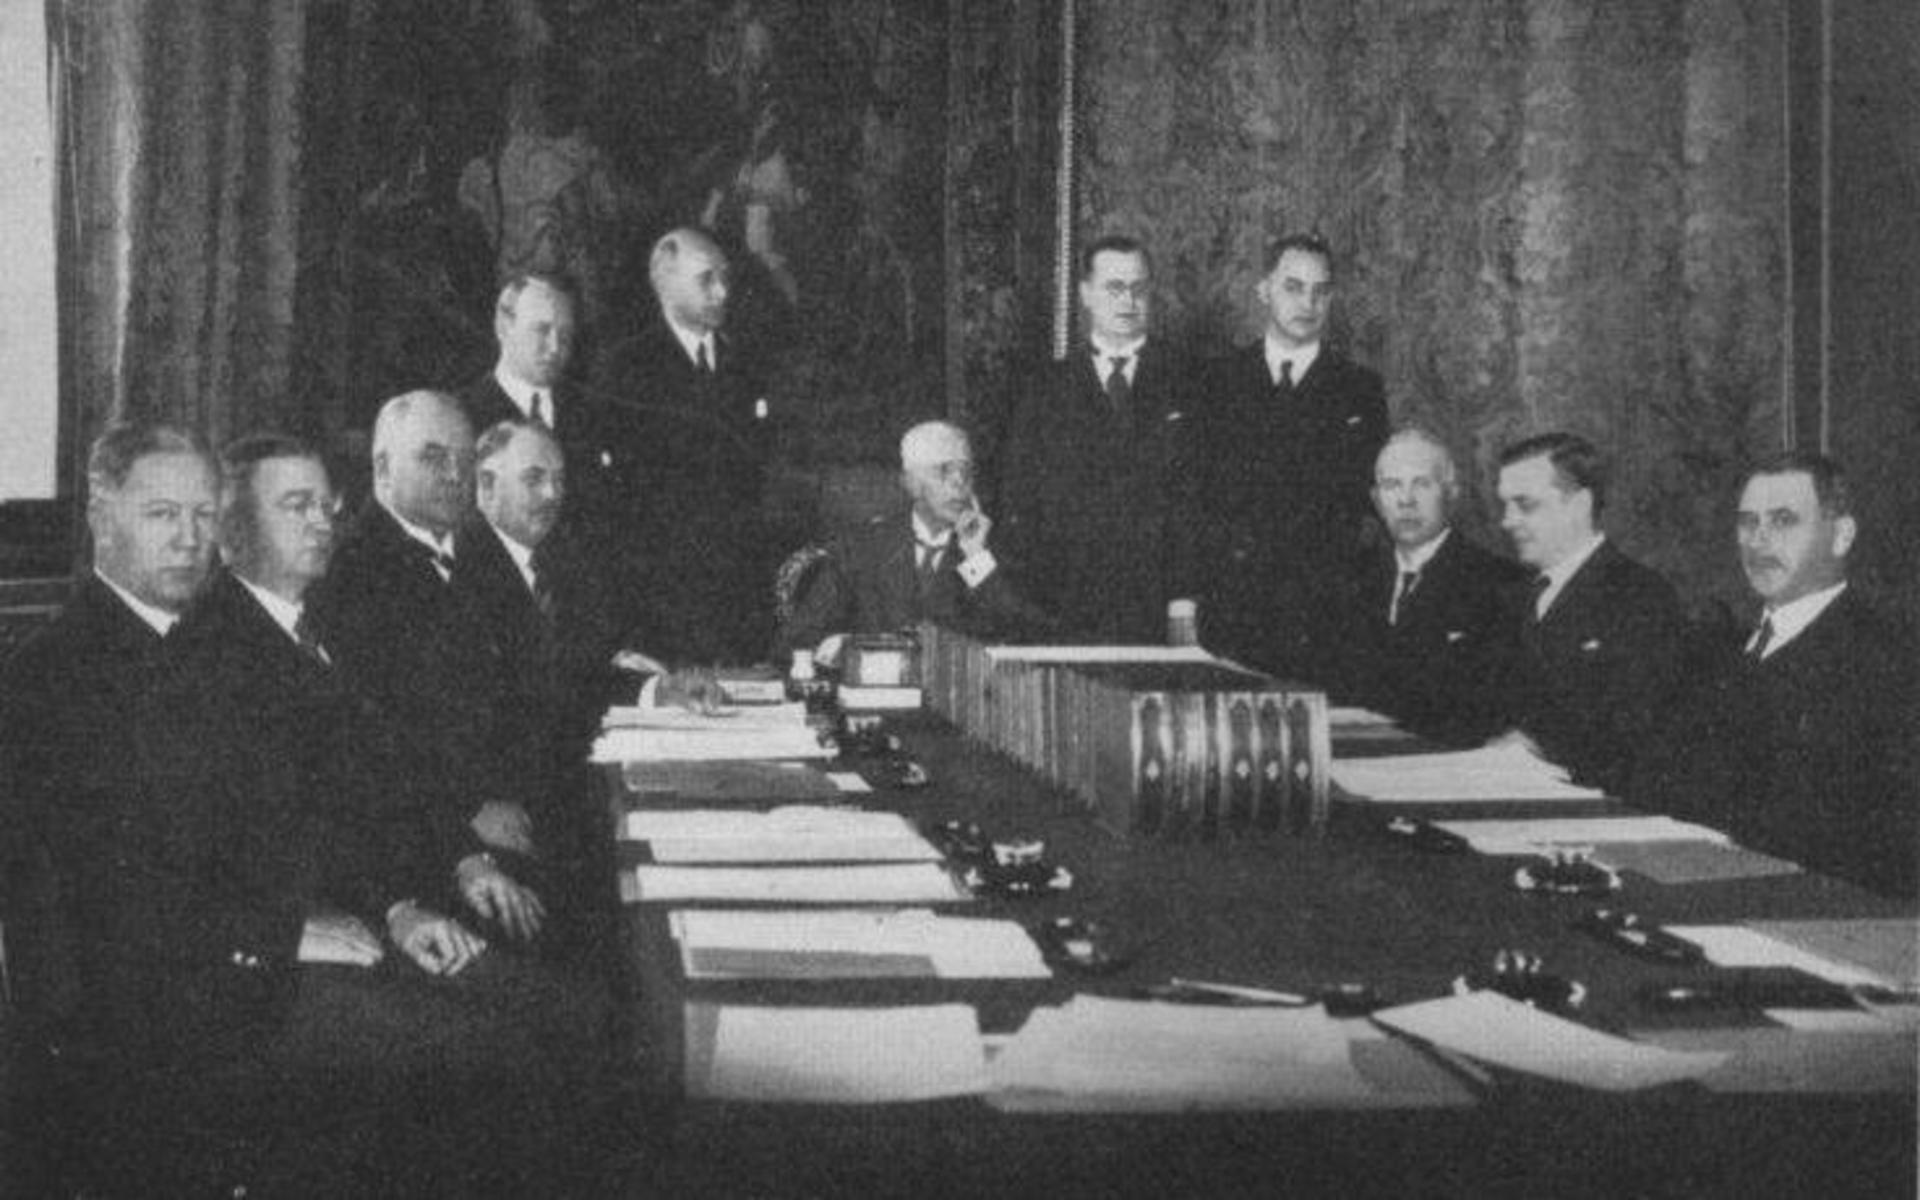 Regeringen Pehrsson-Bramstorp även kallad semesterregeringen eller sommarregeringen, under Axel Pehrsson-Bramstorp var en svensk regering med enbart statsråd från Bondeförbundet med (opolitiska) fackmannainslag. Regeringen tillträdde den 19 juni 1936 och avgick den 28 september samma år, efter andrakammarvalet.